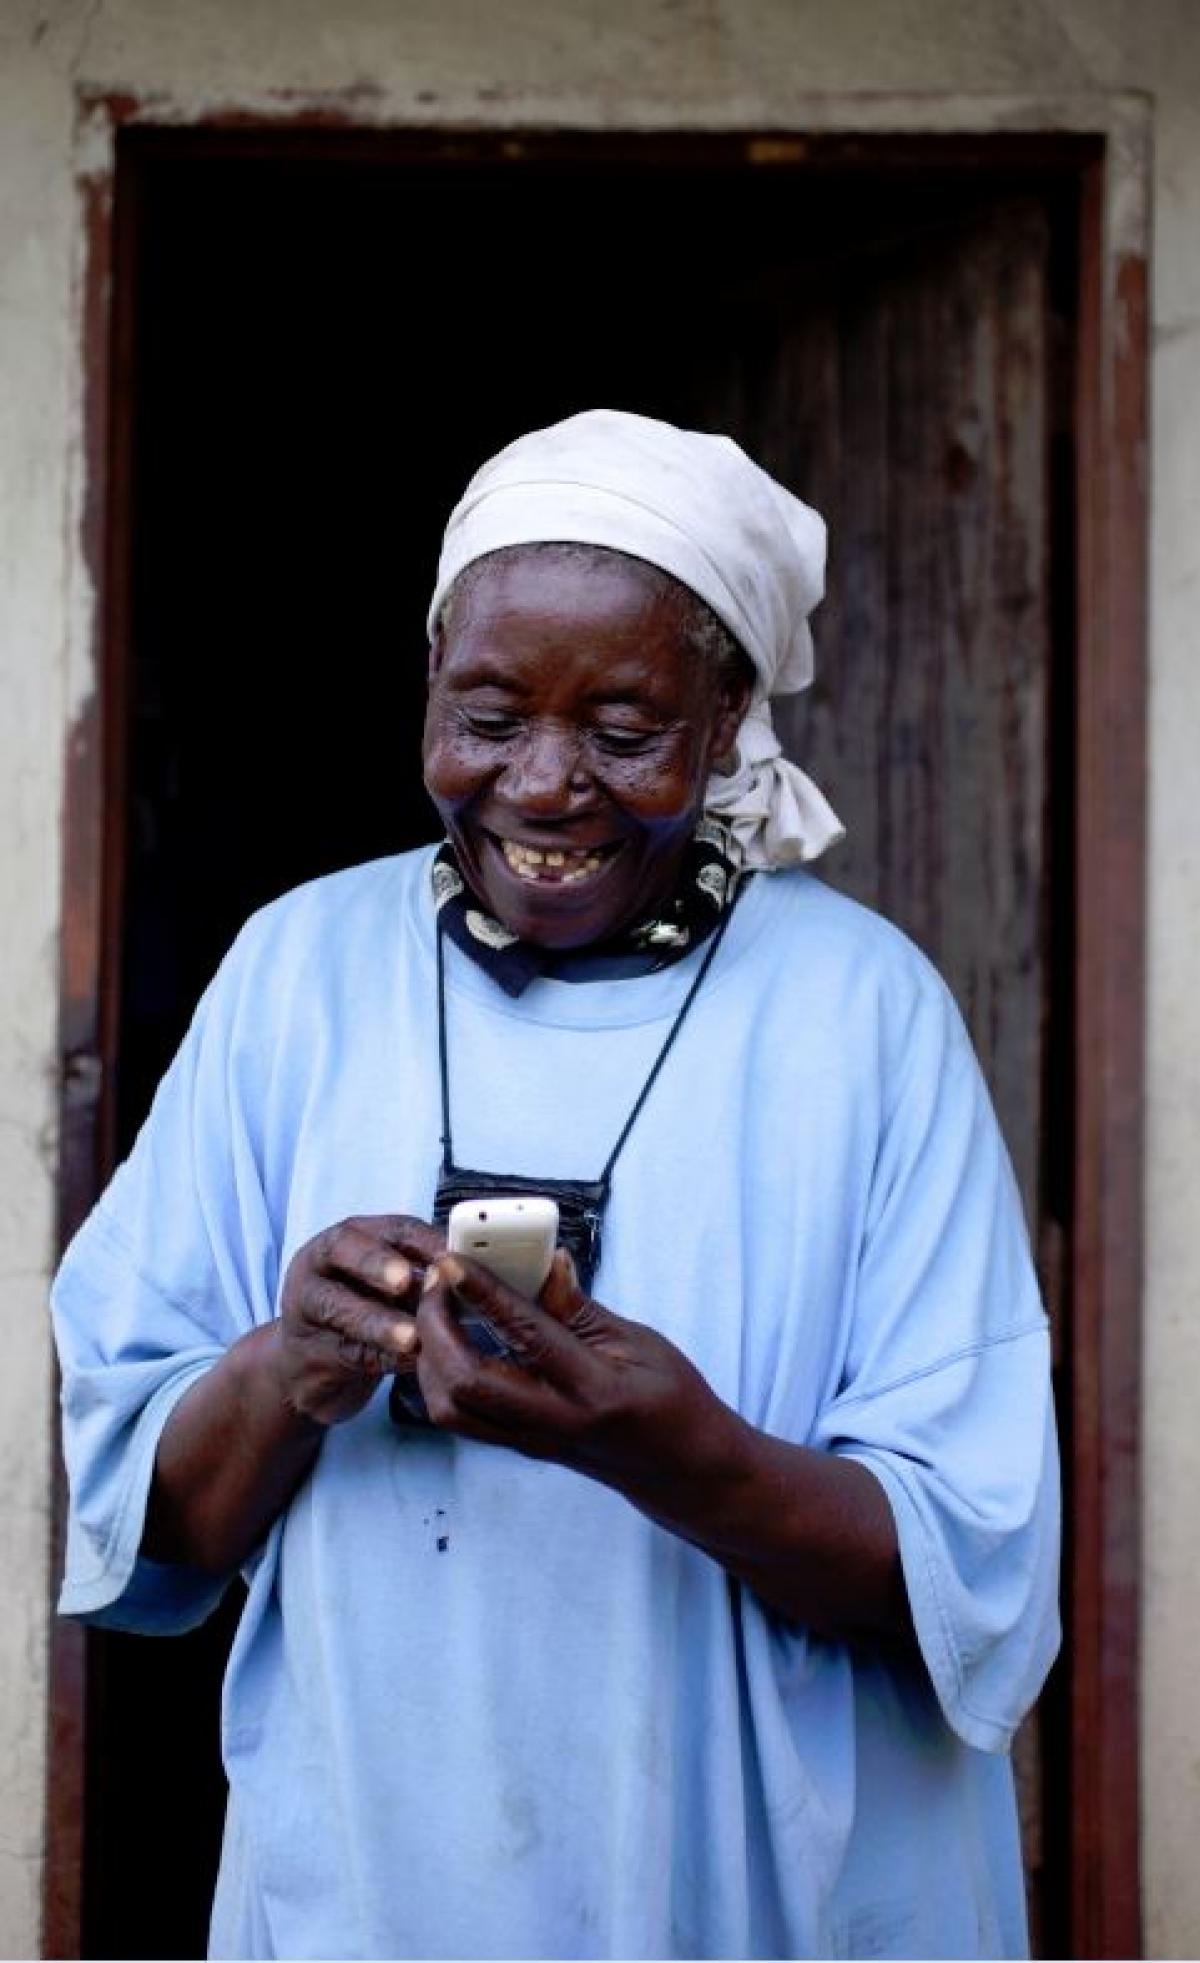 Florence aus Simbabwe erhält finanzielle Unterstützung per Mobiltelefon